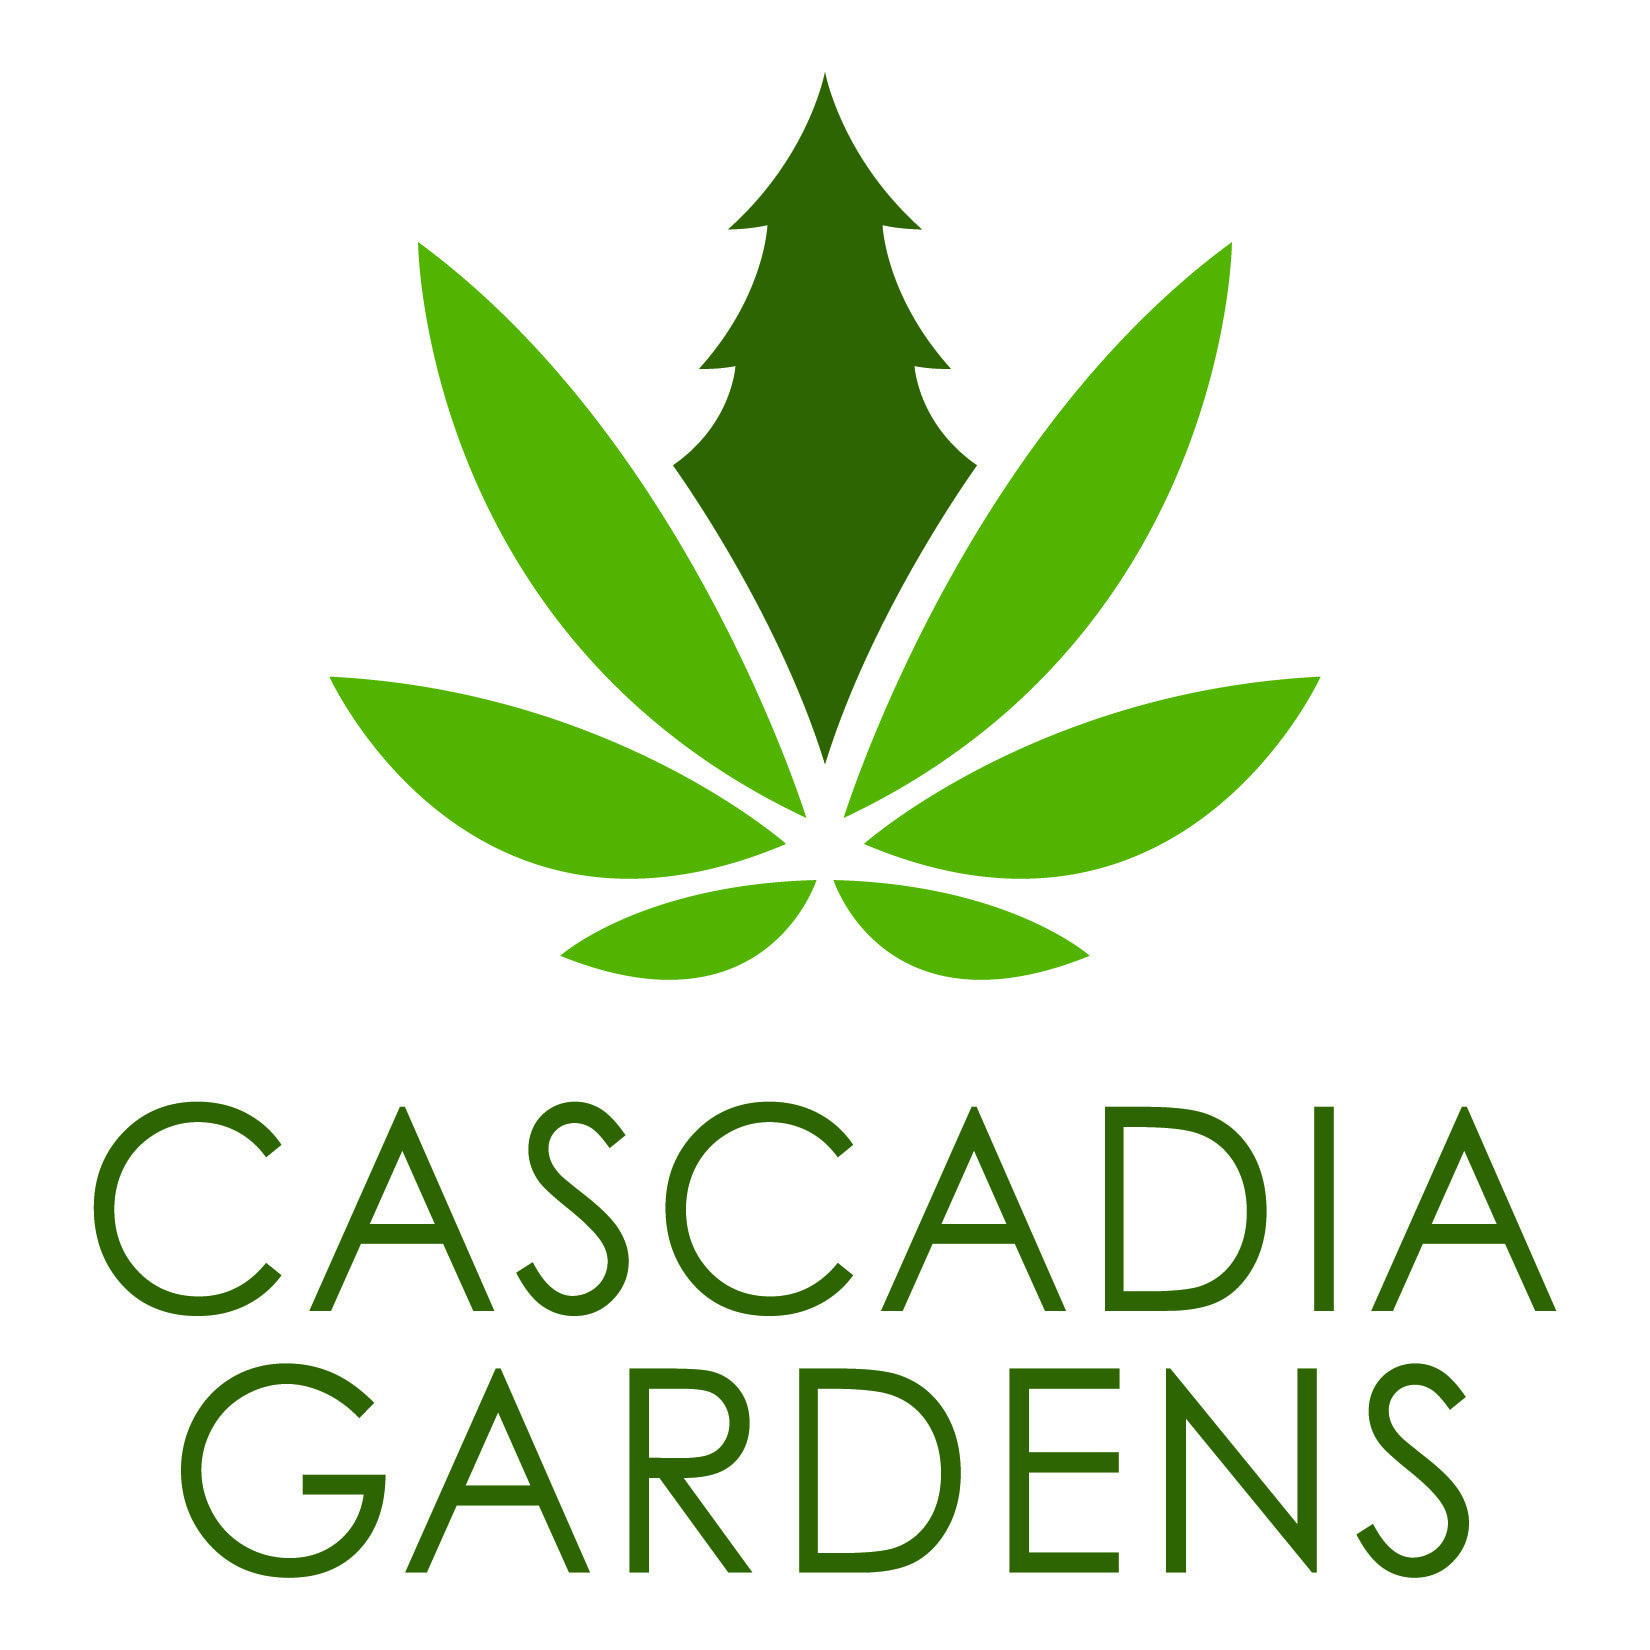 Cascadia Gardens Simple.jpg